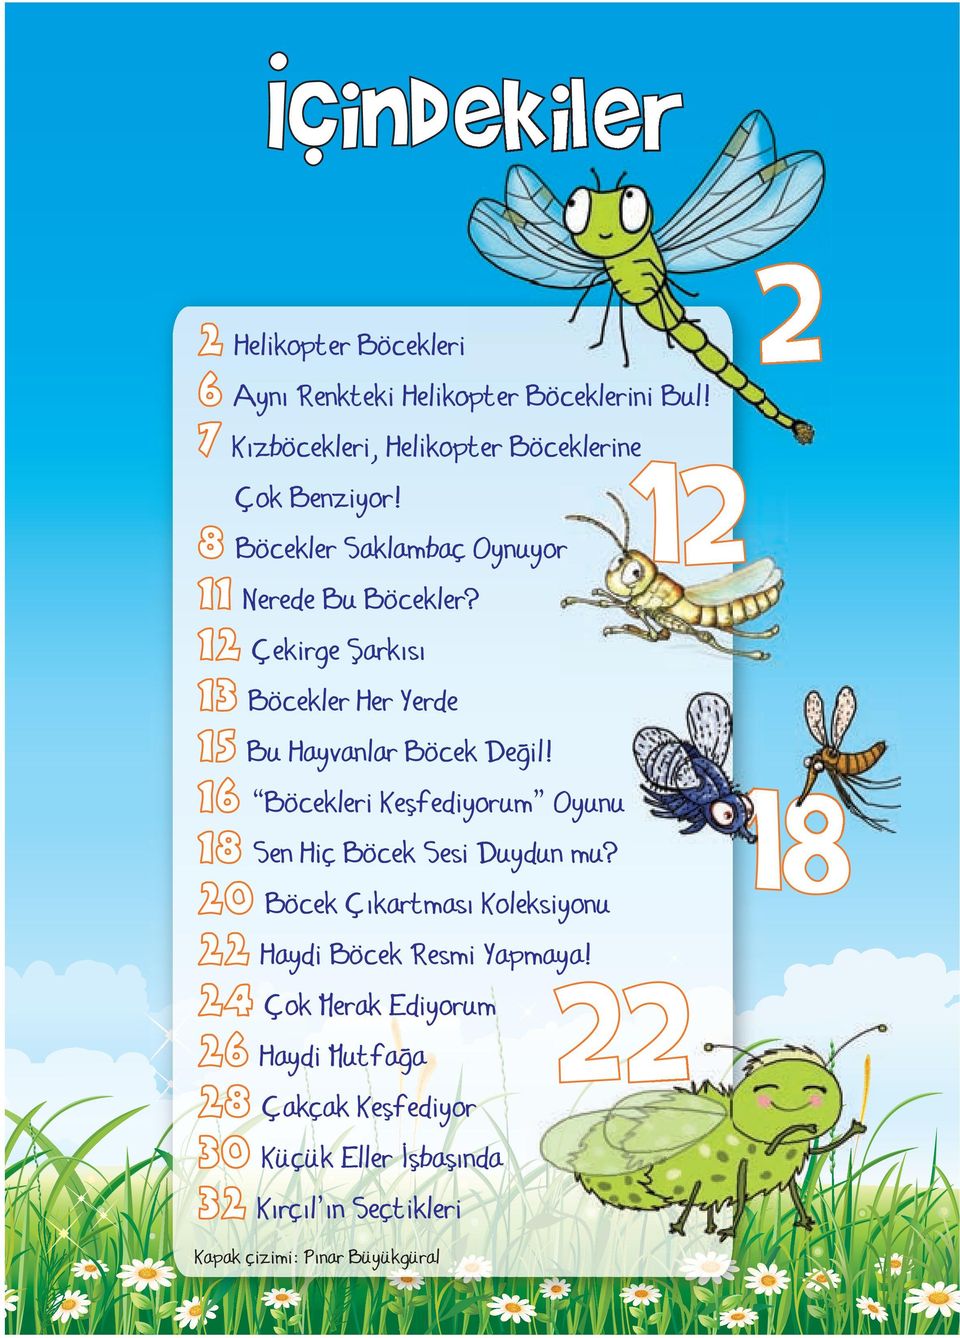 16 Böcekleri Keşfediyorum Oyunu 18 Sen Hiç Böcek Sesi Duydun mu? 20 Böcek Çıkartması Koleksiyonu 22 Haydi Böcek Resmi Yapmaya!